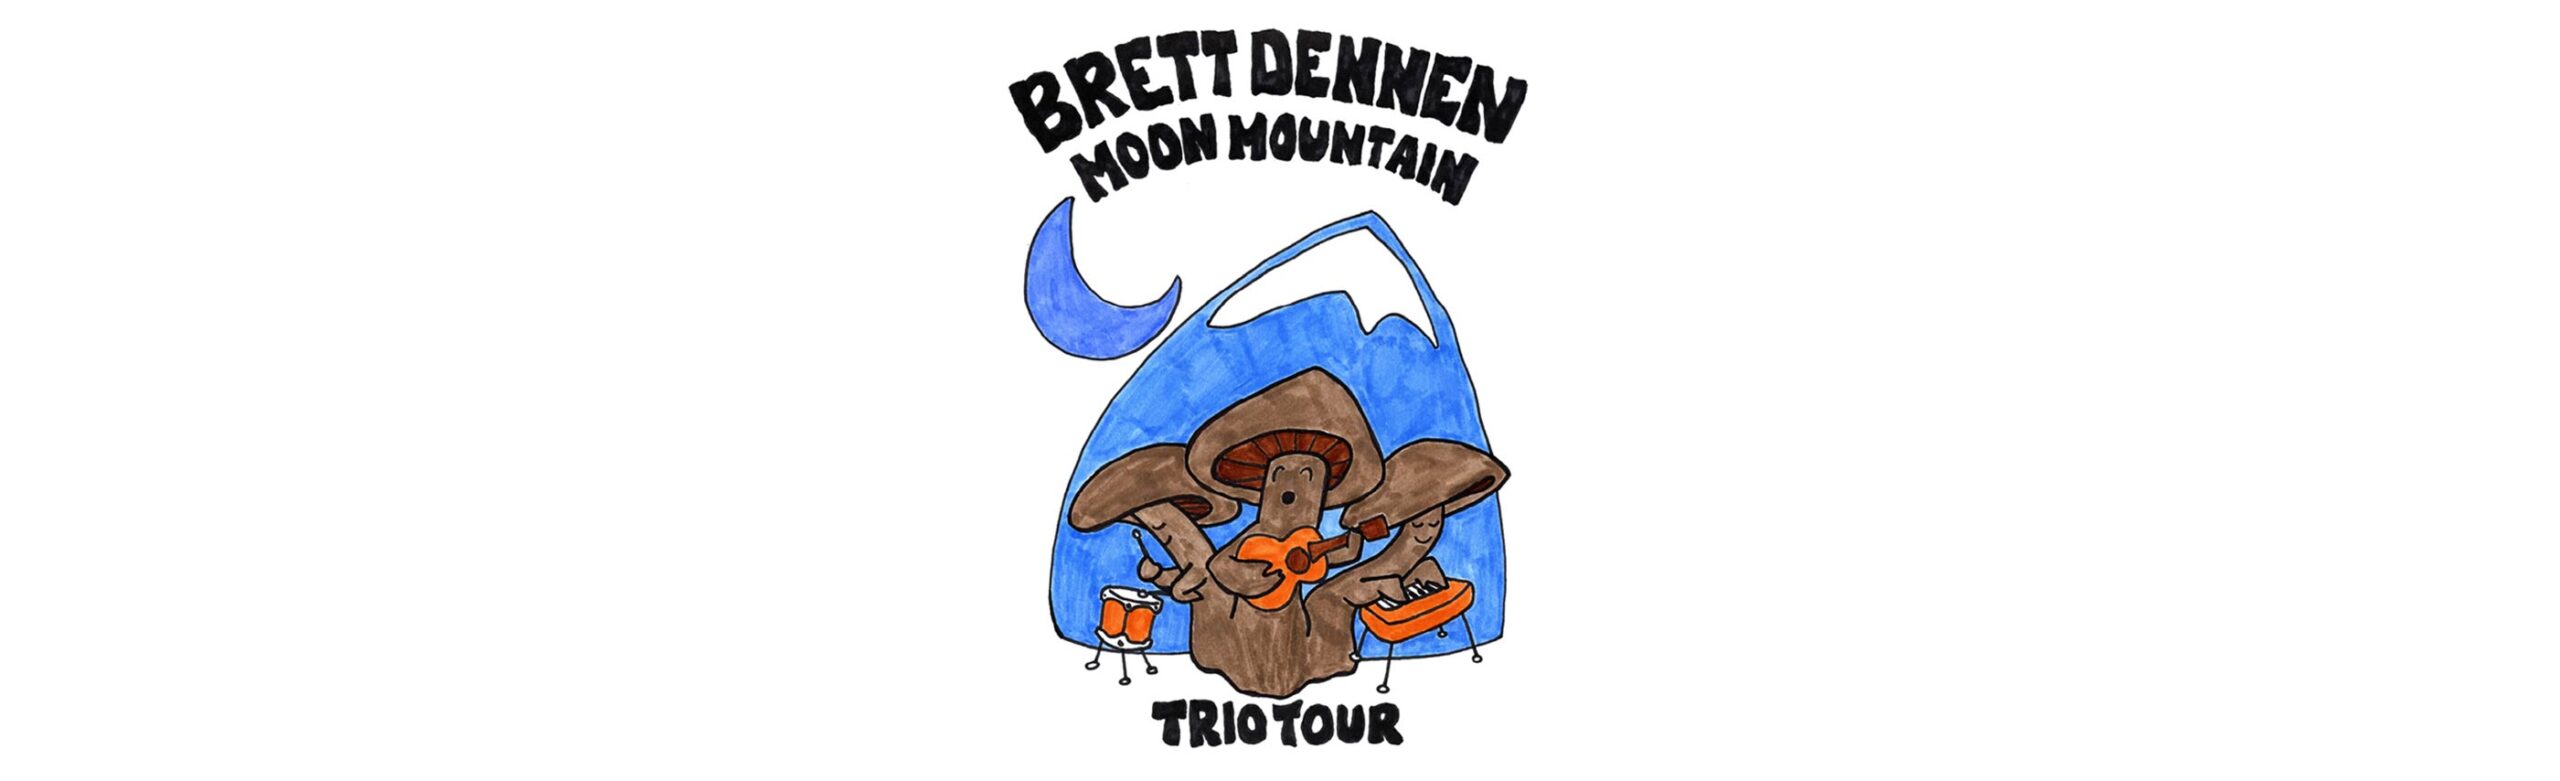 Brett Dennen Announces Moon Mountain Trio Tour Stop at Rialto Bozeman Image